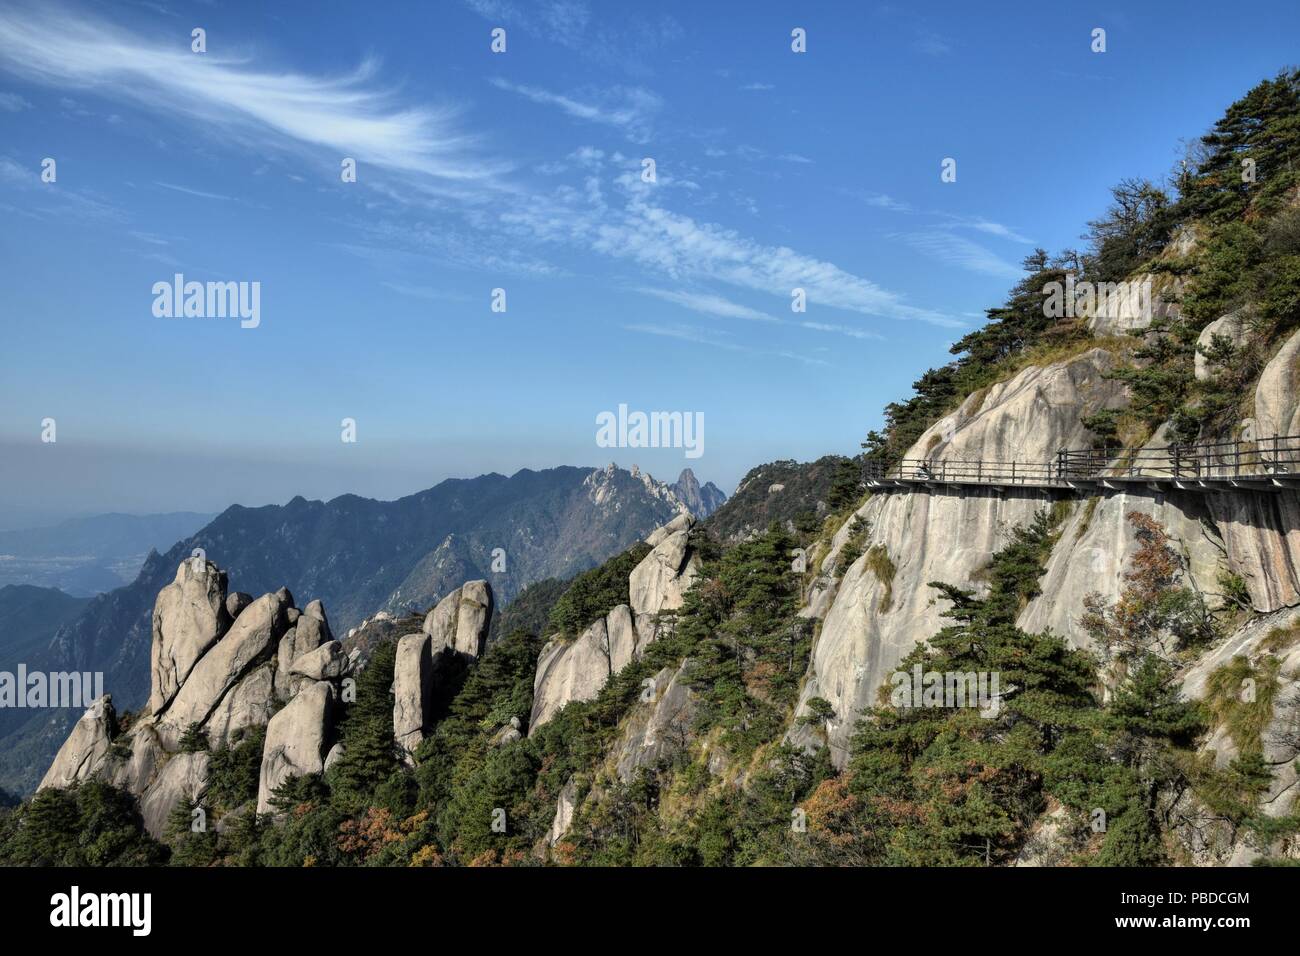 Un sideway alta sul Monte Jiuhua, nove Montagne incantate, uno dei quattro monti sacri del Buddismo cinese nella provincia di Anhui in Cina. Foto Stock